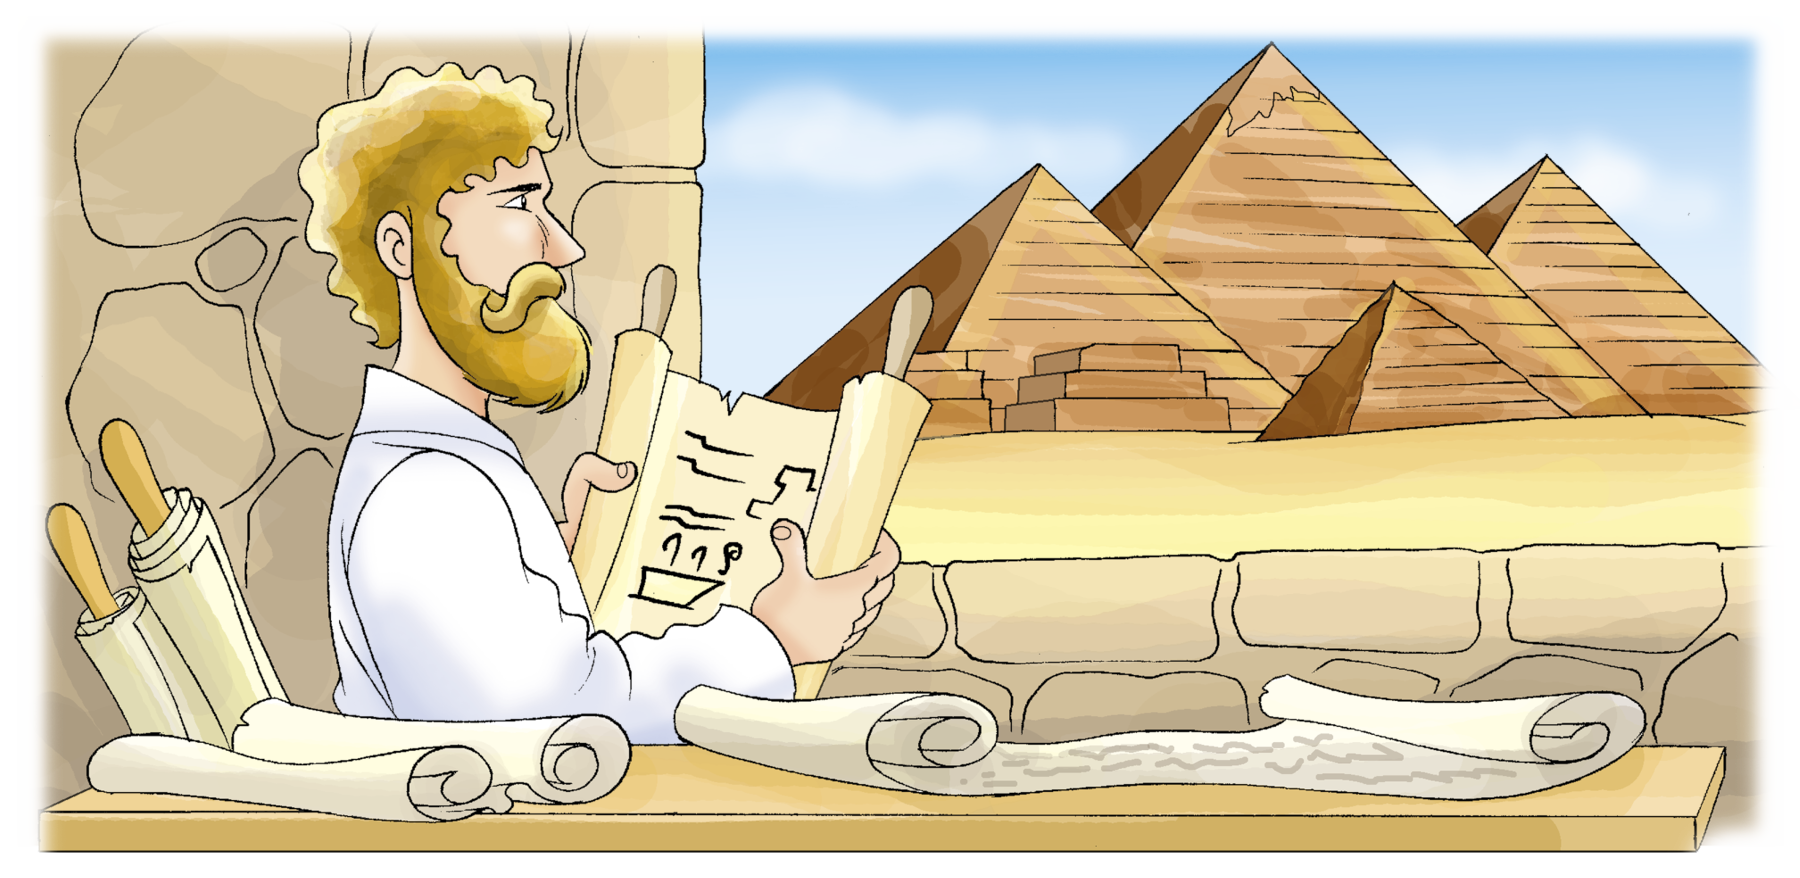 Ilustração. À esquerda, homem de cabelo claro e barba segura um papiro aberto com informações. Ao lado, papéis sobre uma mesa. Ao fundo, pirâmides.